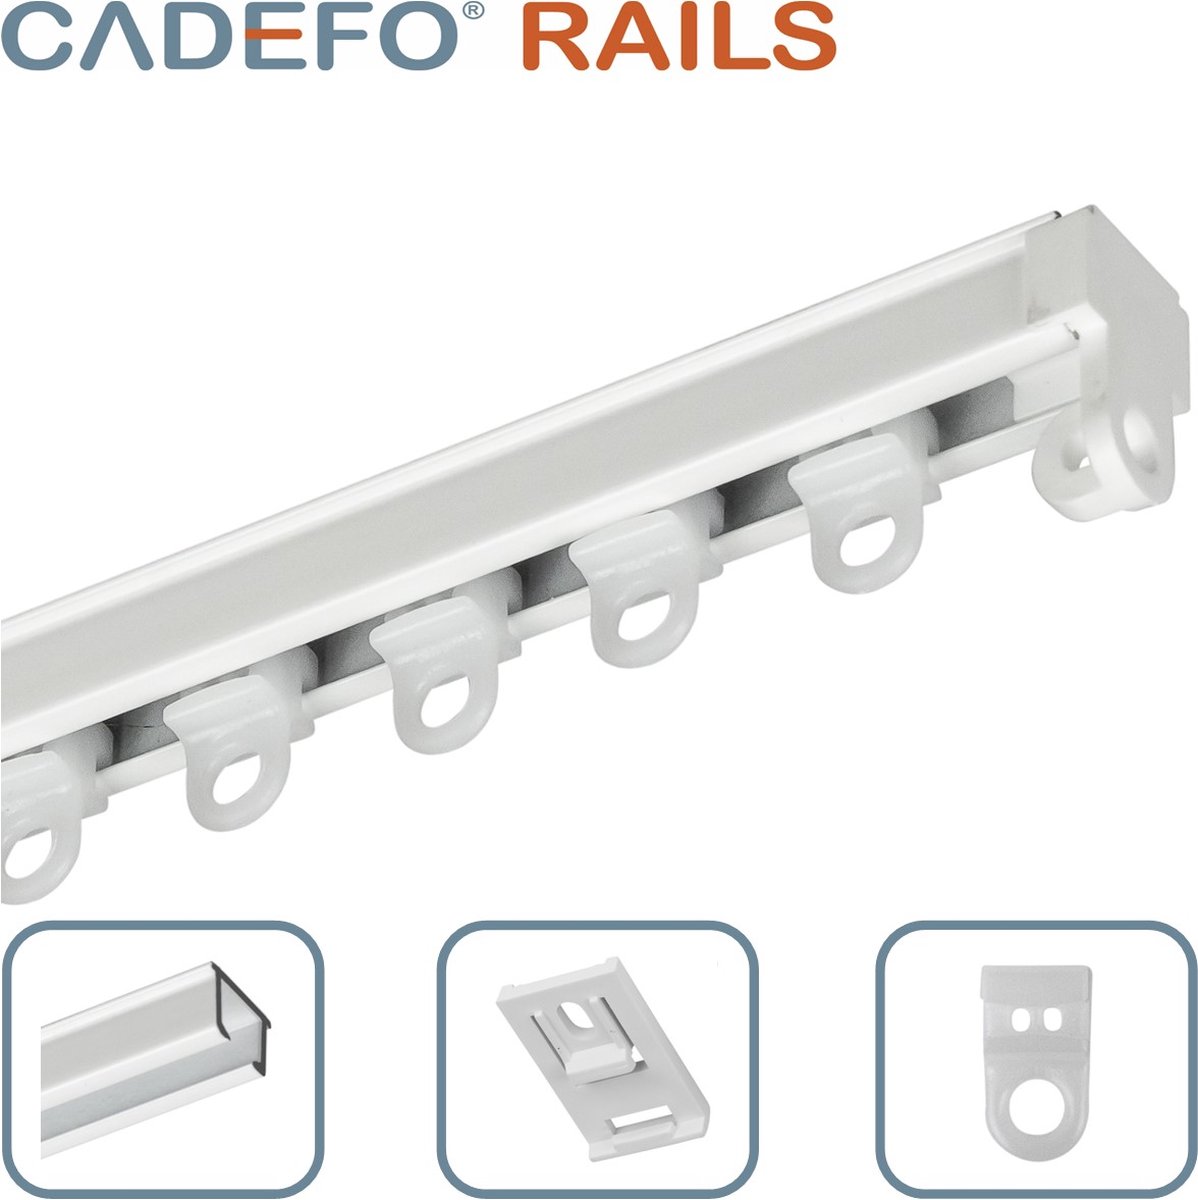 CADEFO RAILS (251 - 300 cm) Gordijnrails - Compleet op maat! - UIT 1 STUK - Leverbaar tot 6 meter - Plafondbevestiging - Lengte 261 cm